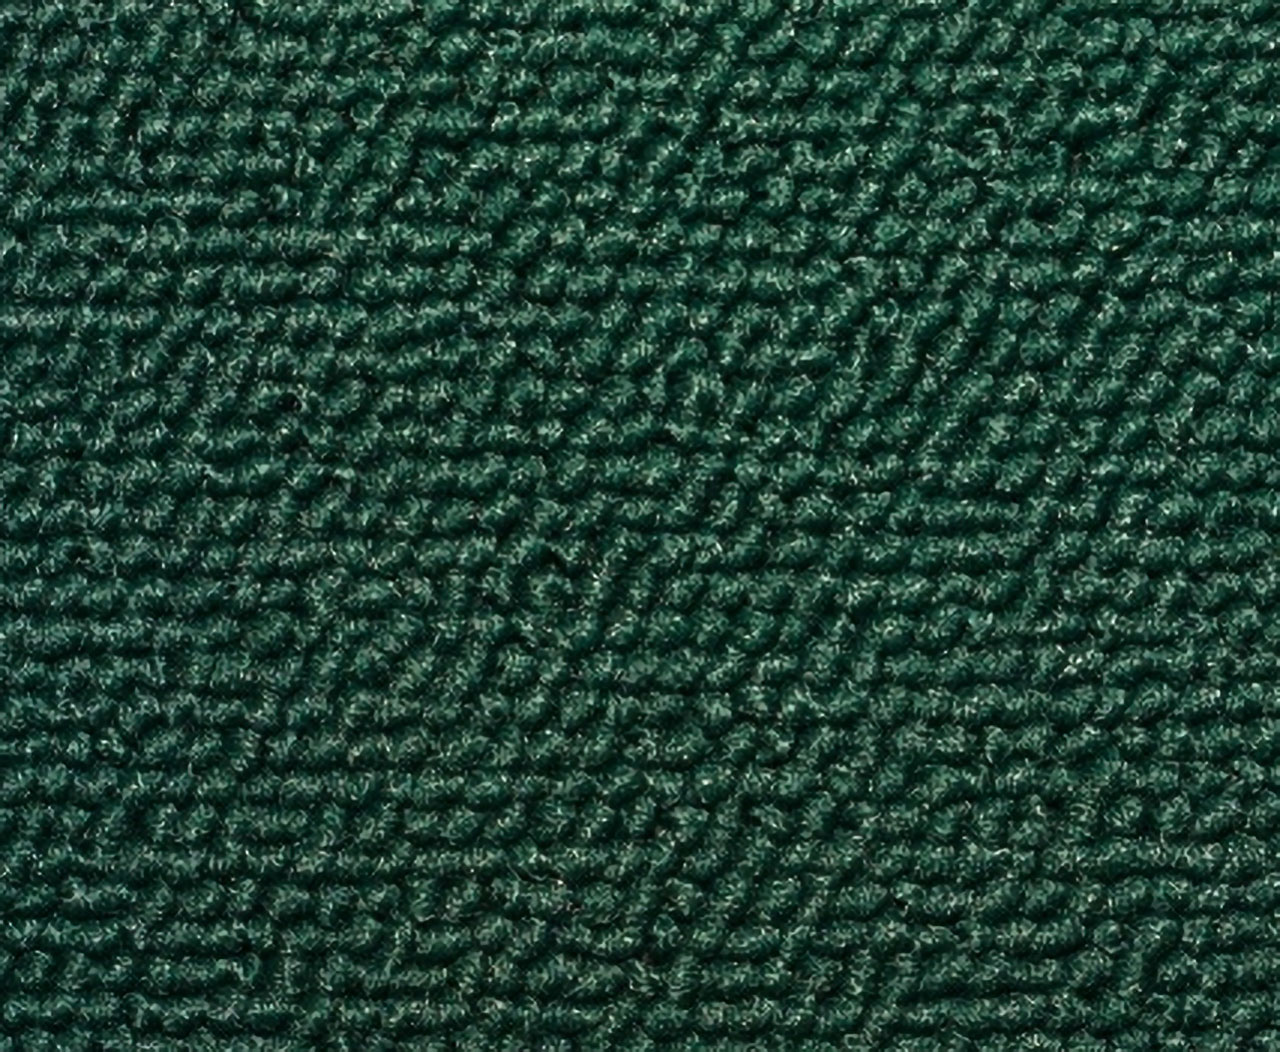 Holden Kingswood HX Kingswood Ute 45V Jade Green Carpet (Image 1 of 1)